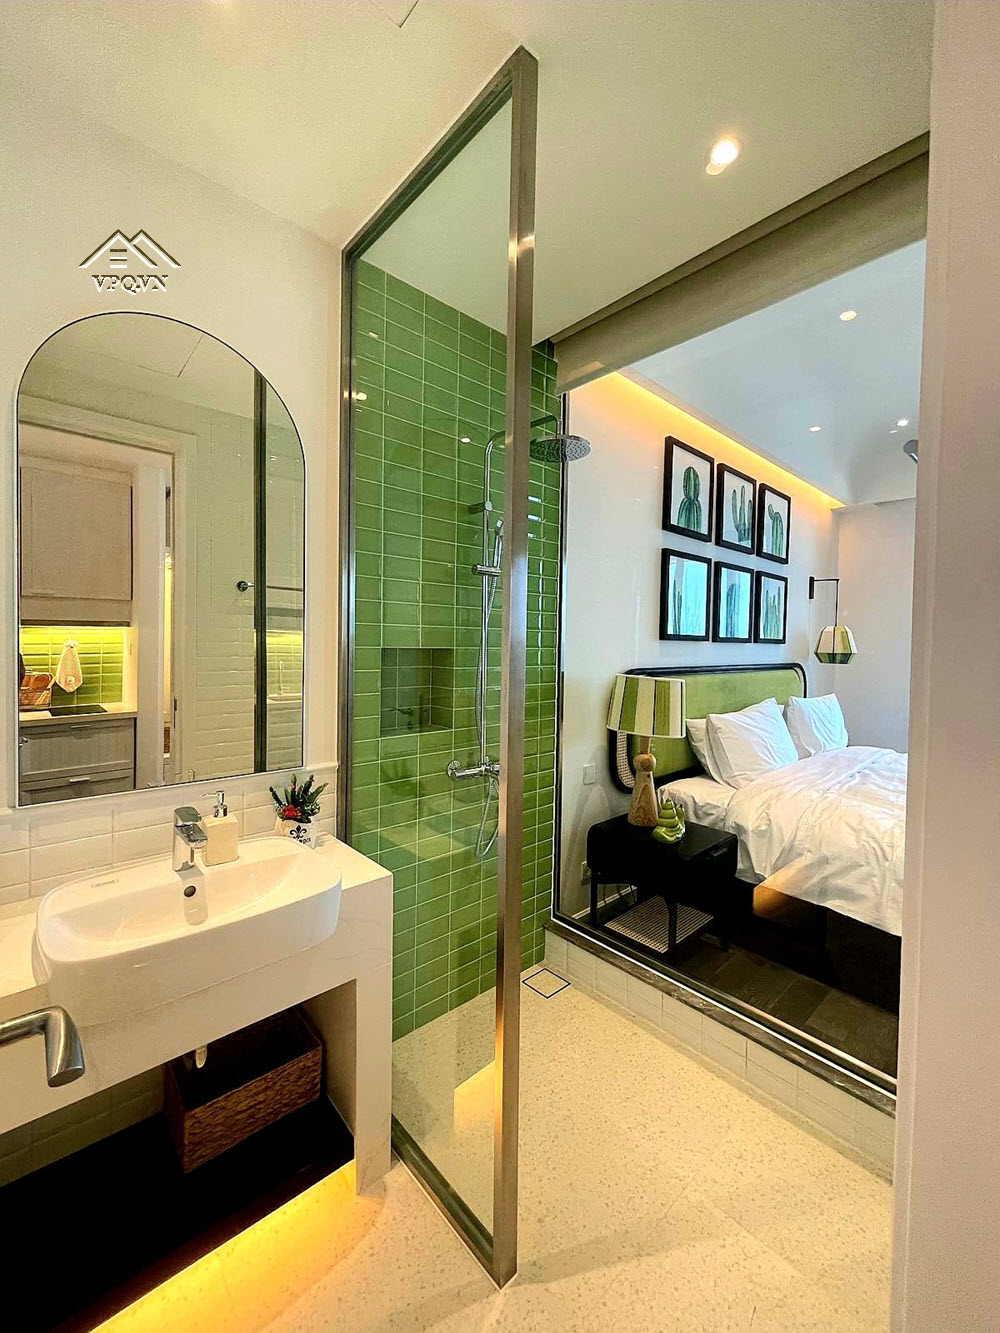 Phòng vệ sinh cùng tông màu với phòng ngủ tạo sự đồng điệu